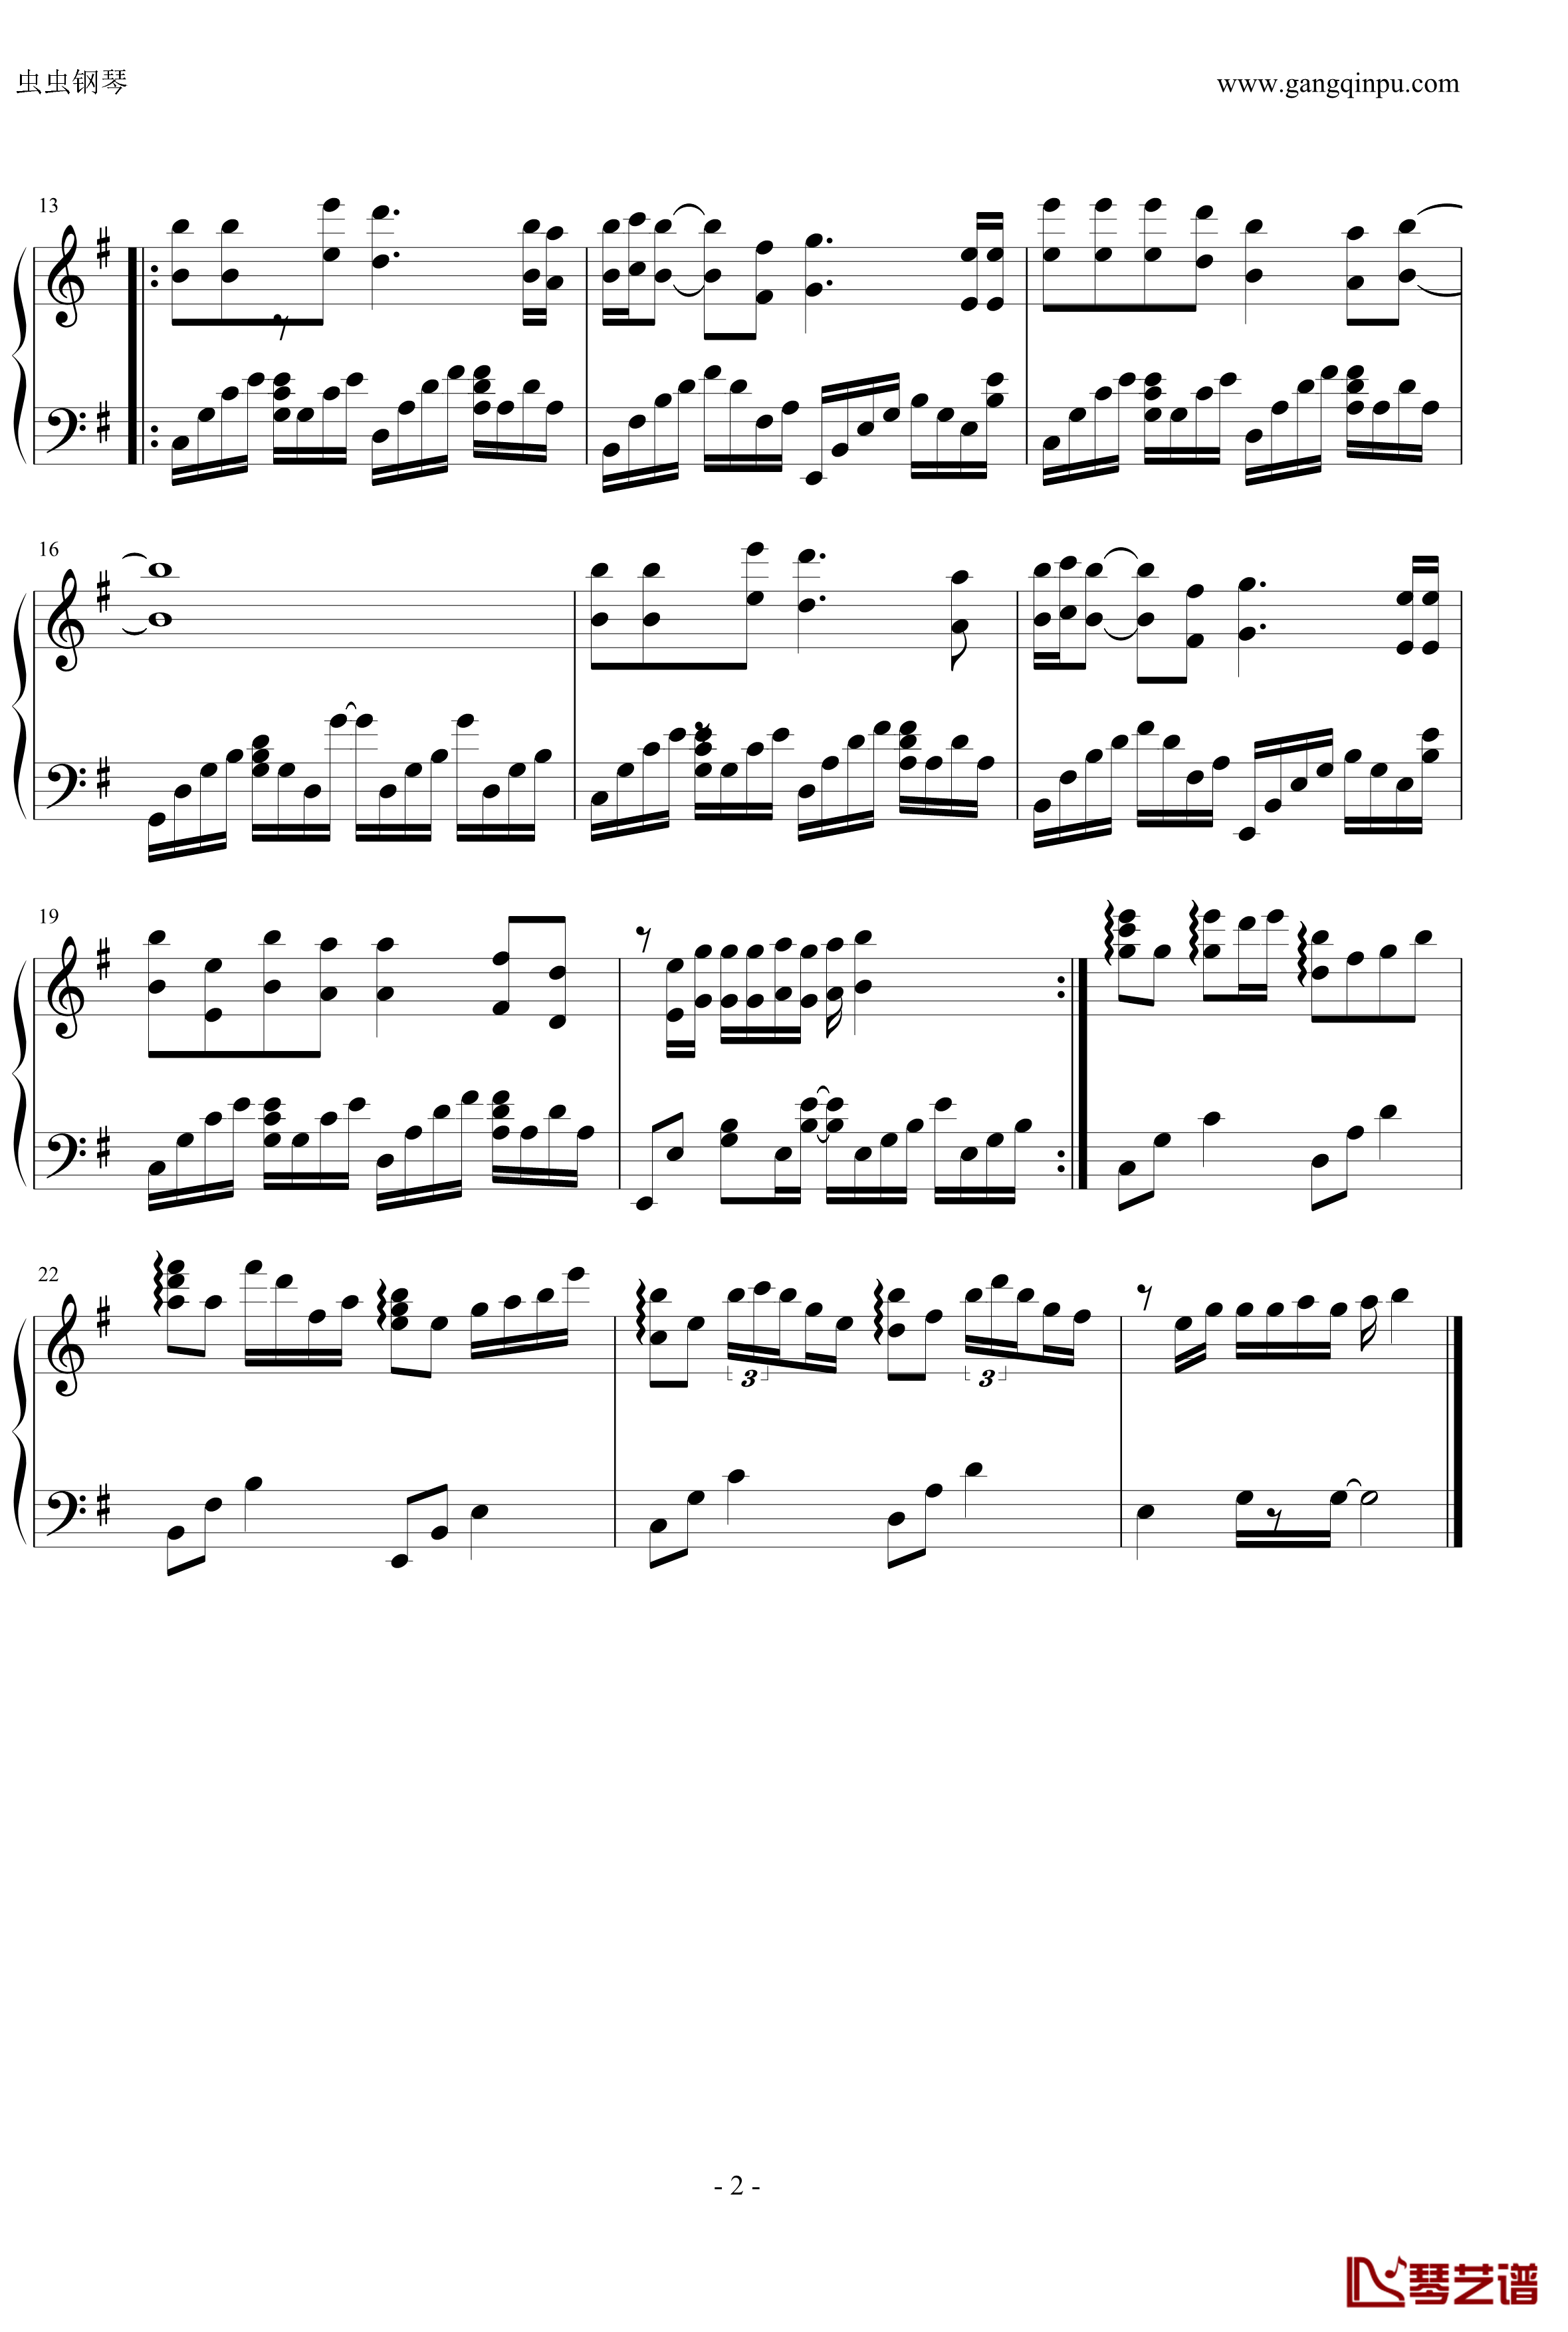 斑马斑马钢琴谱-独奏版-宋东野